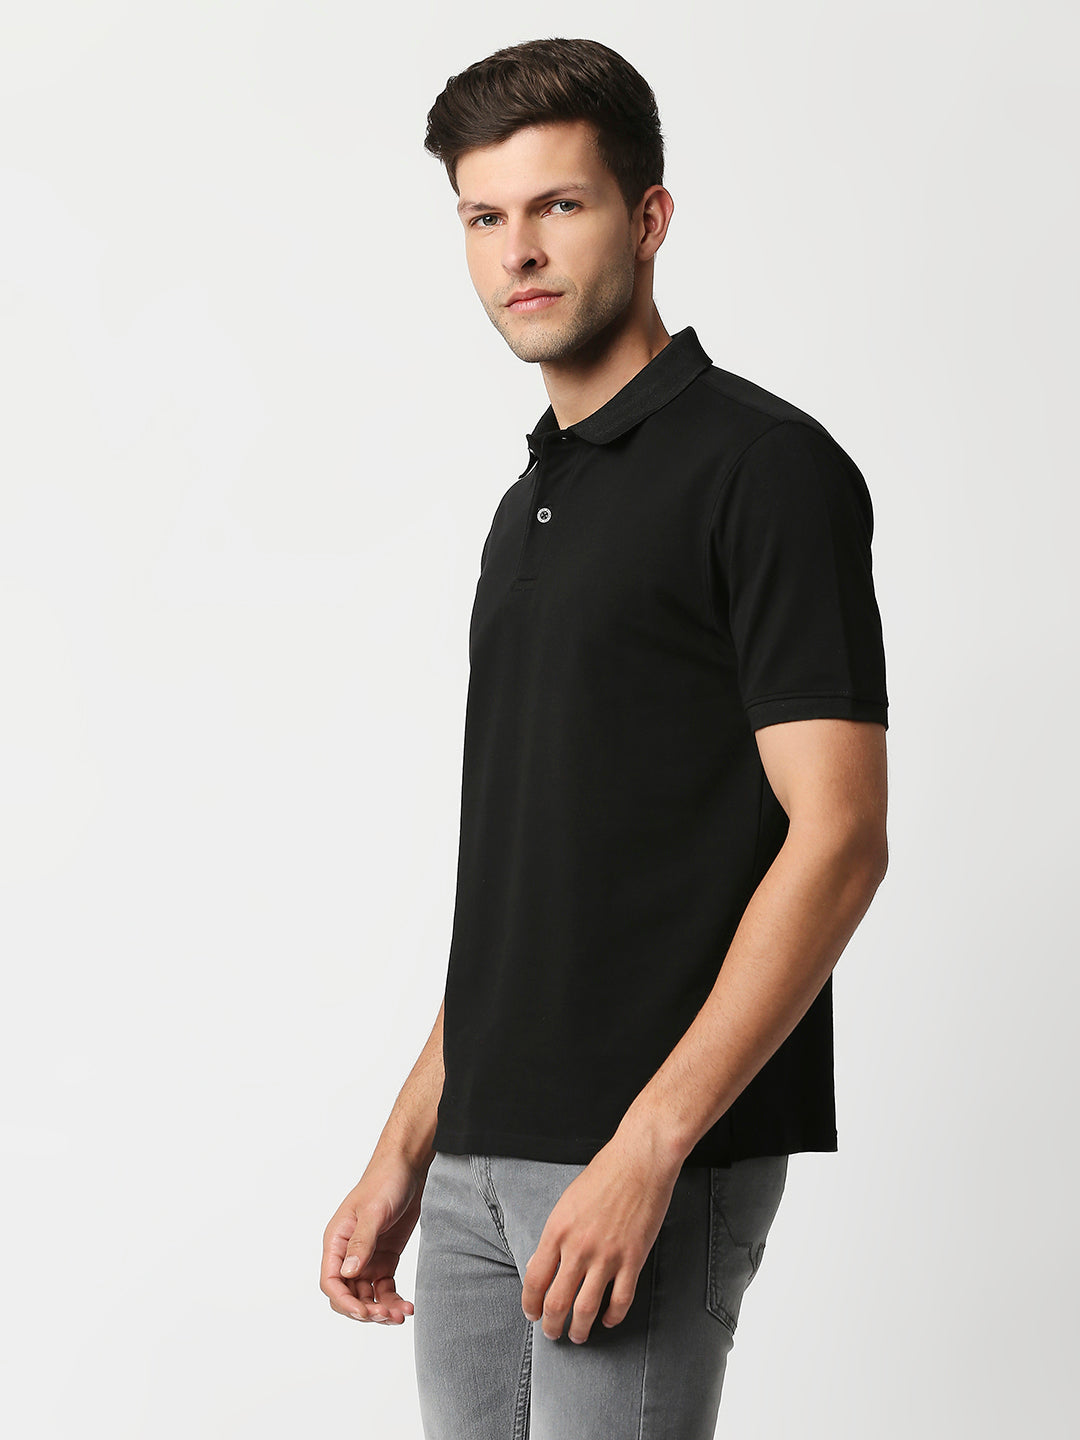 Buy Blamblack Men's Polo Plain Black color T shirt